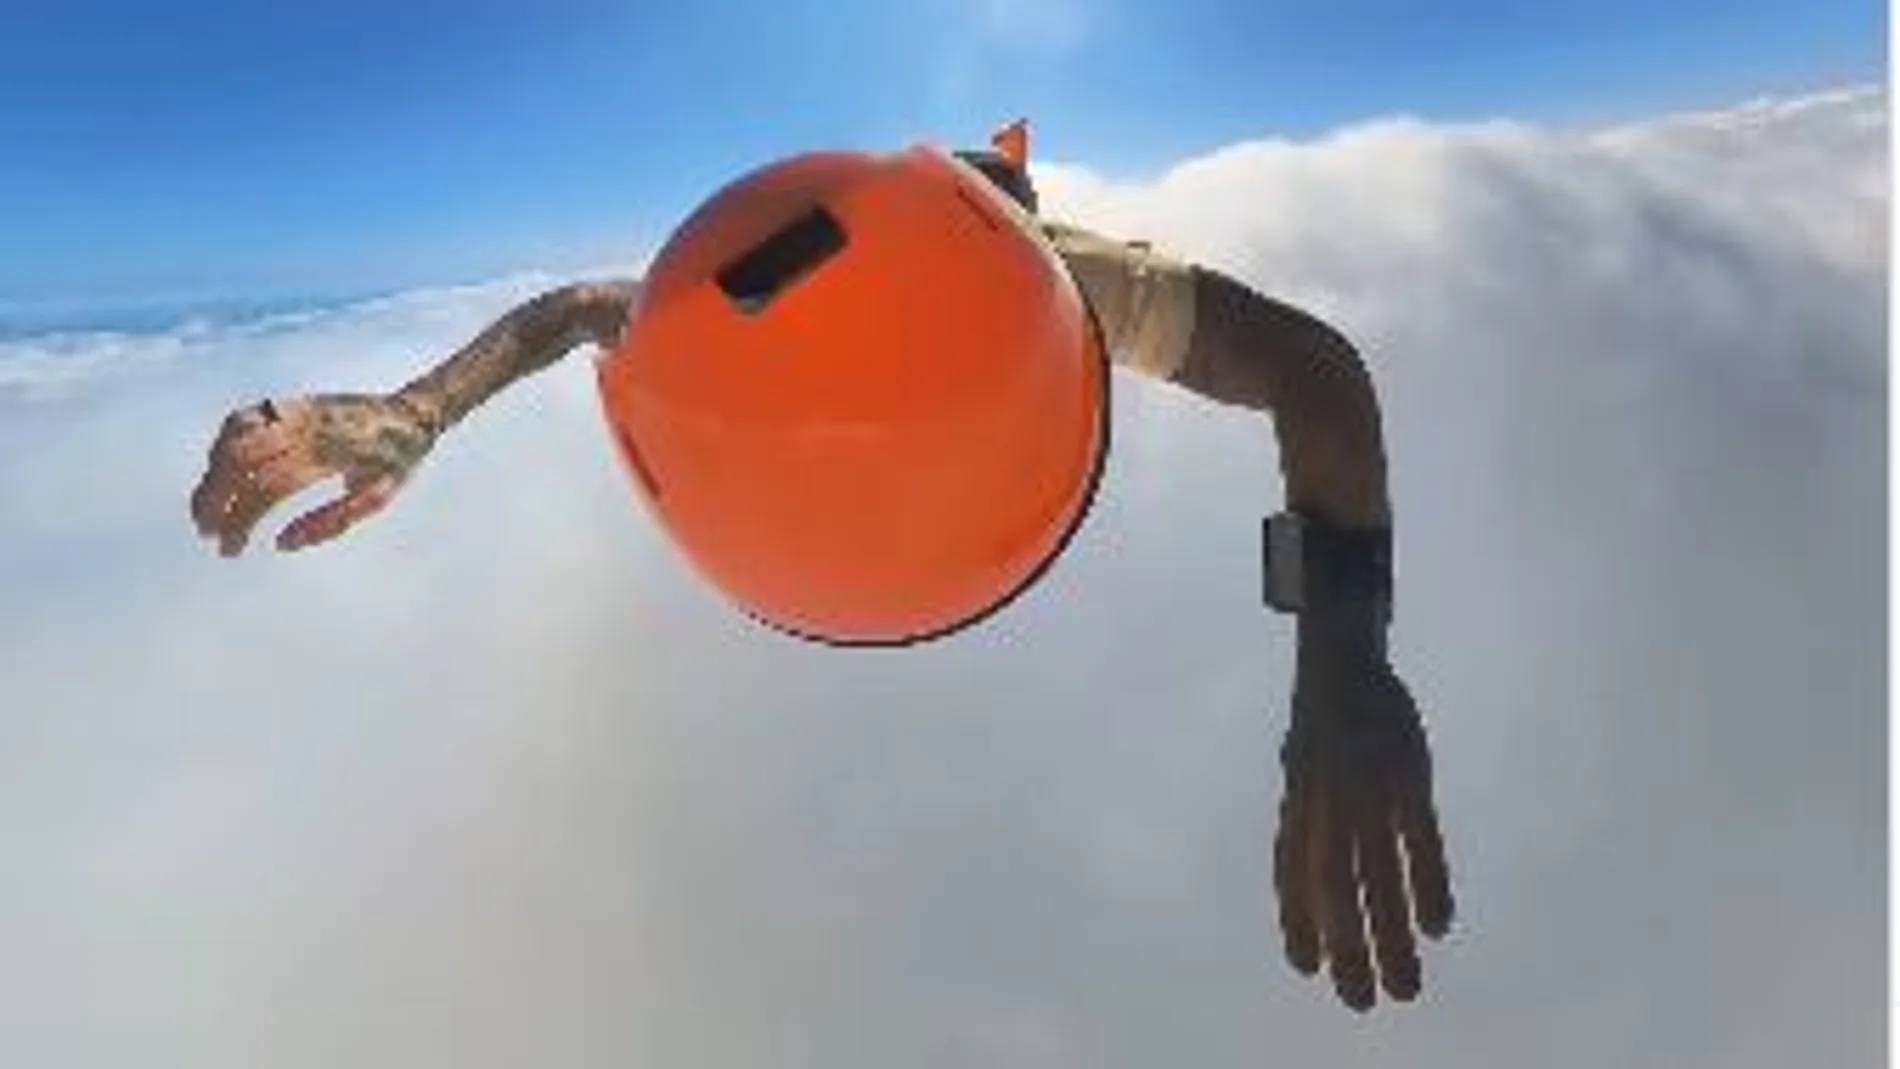 Eric Finat, el paracaidista español que ha mostrado como es el increíble interior de una nube